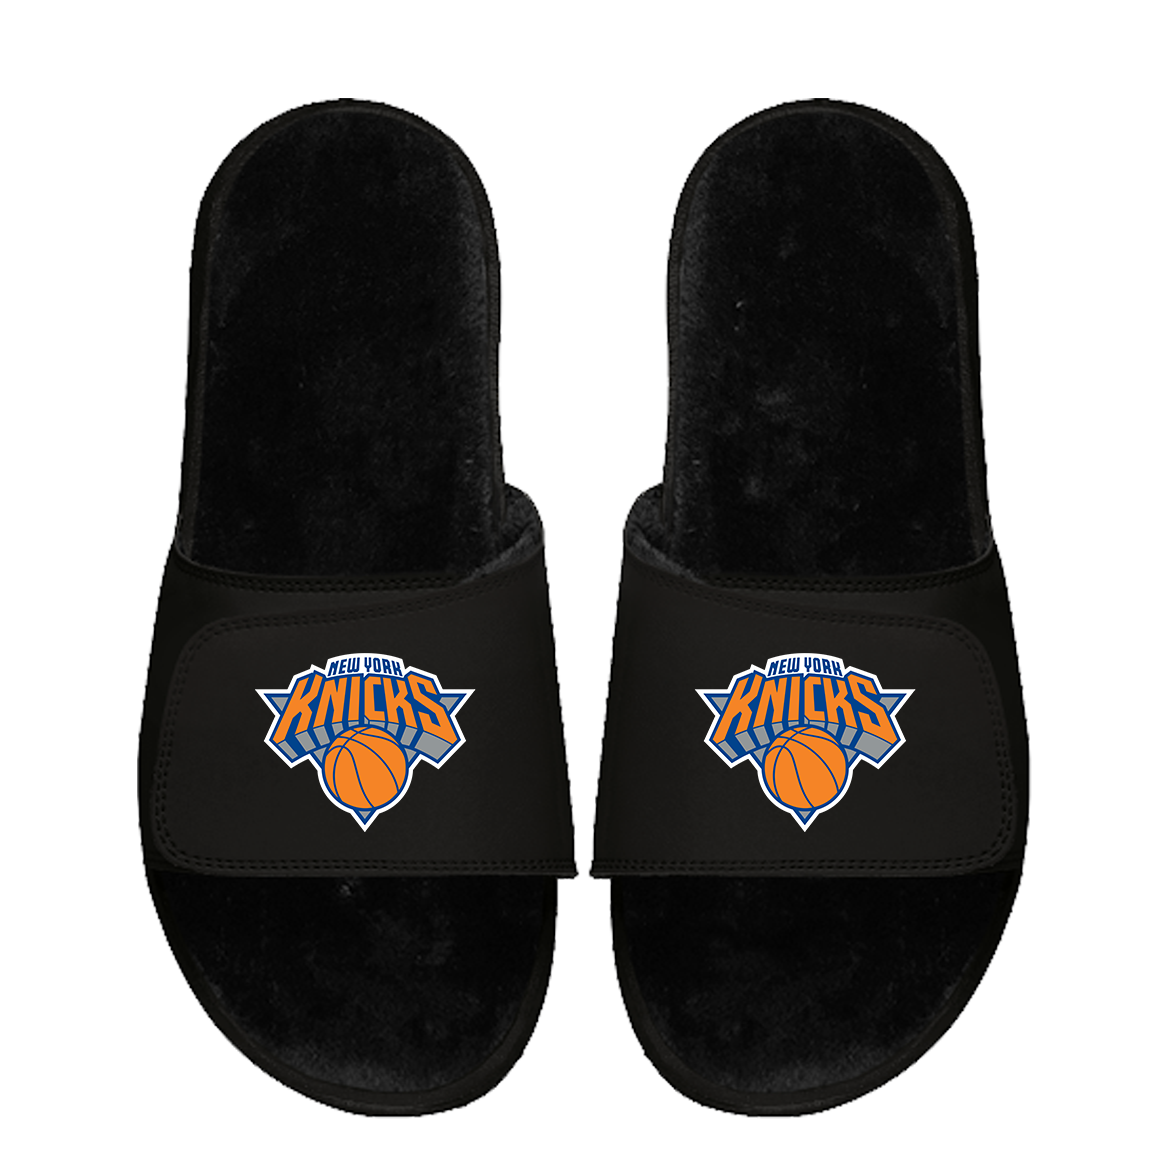 New York Knicks Primary Black Fur